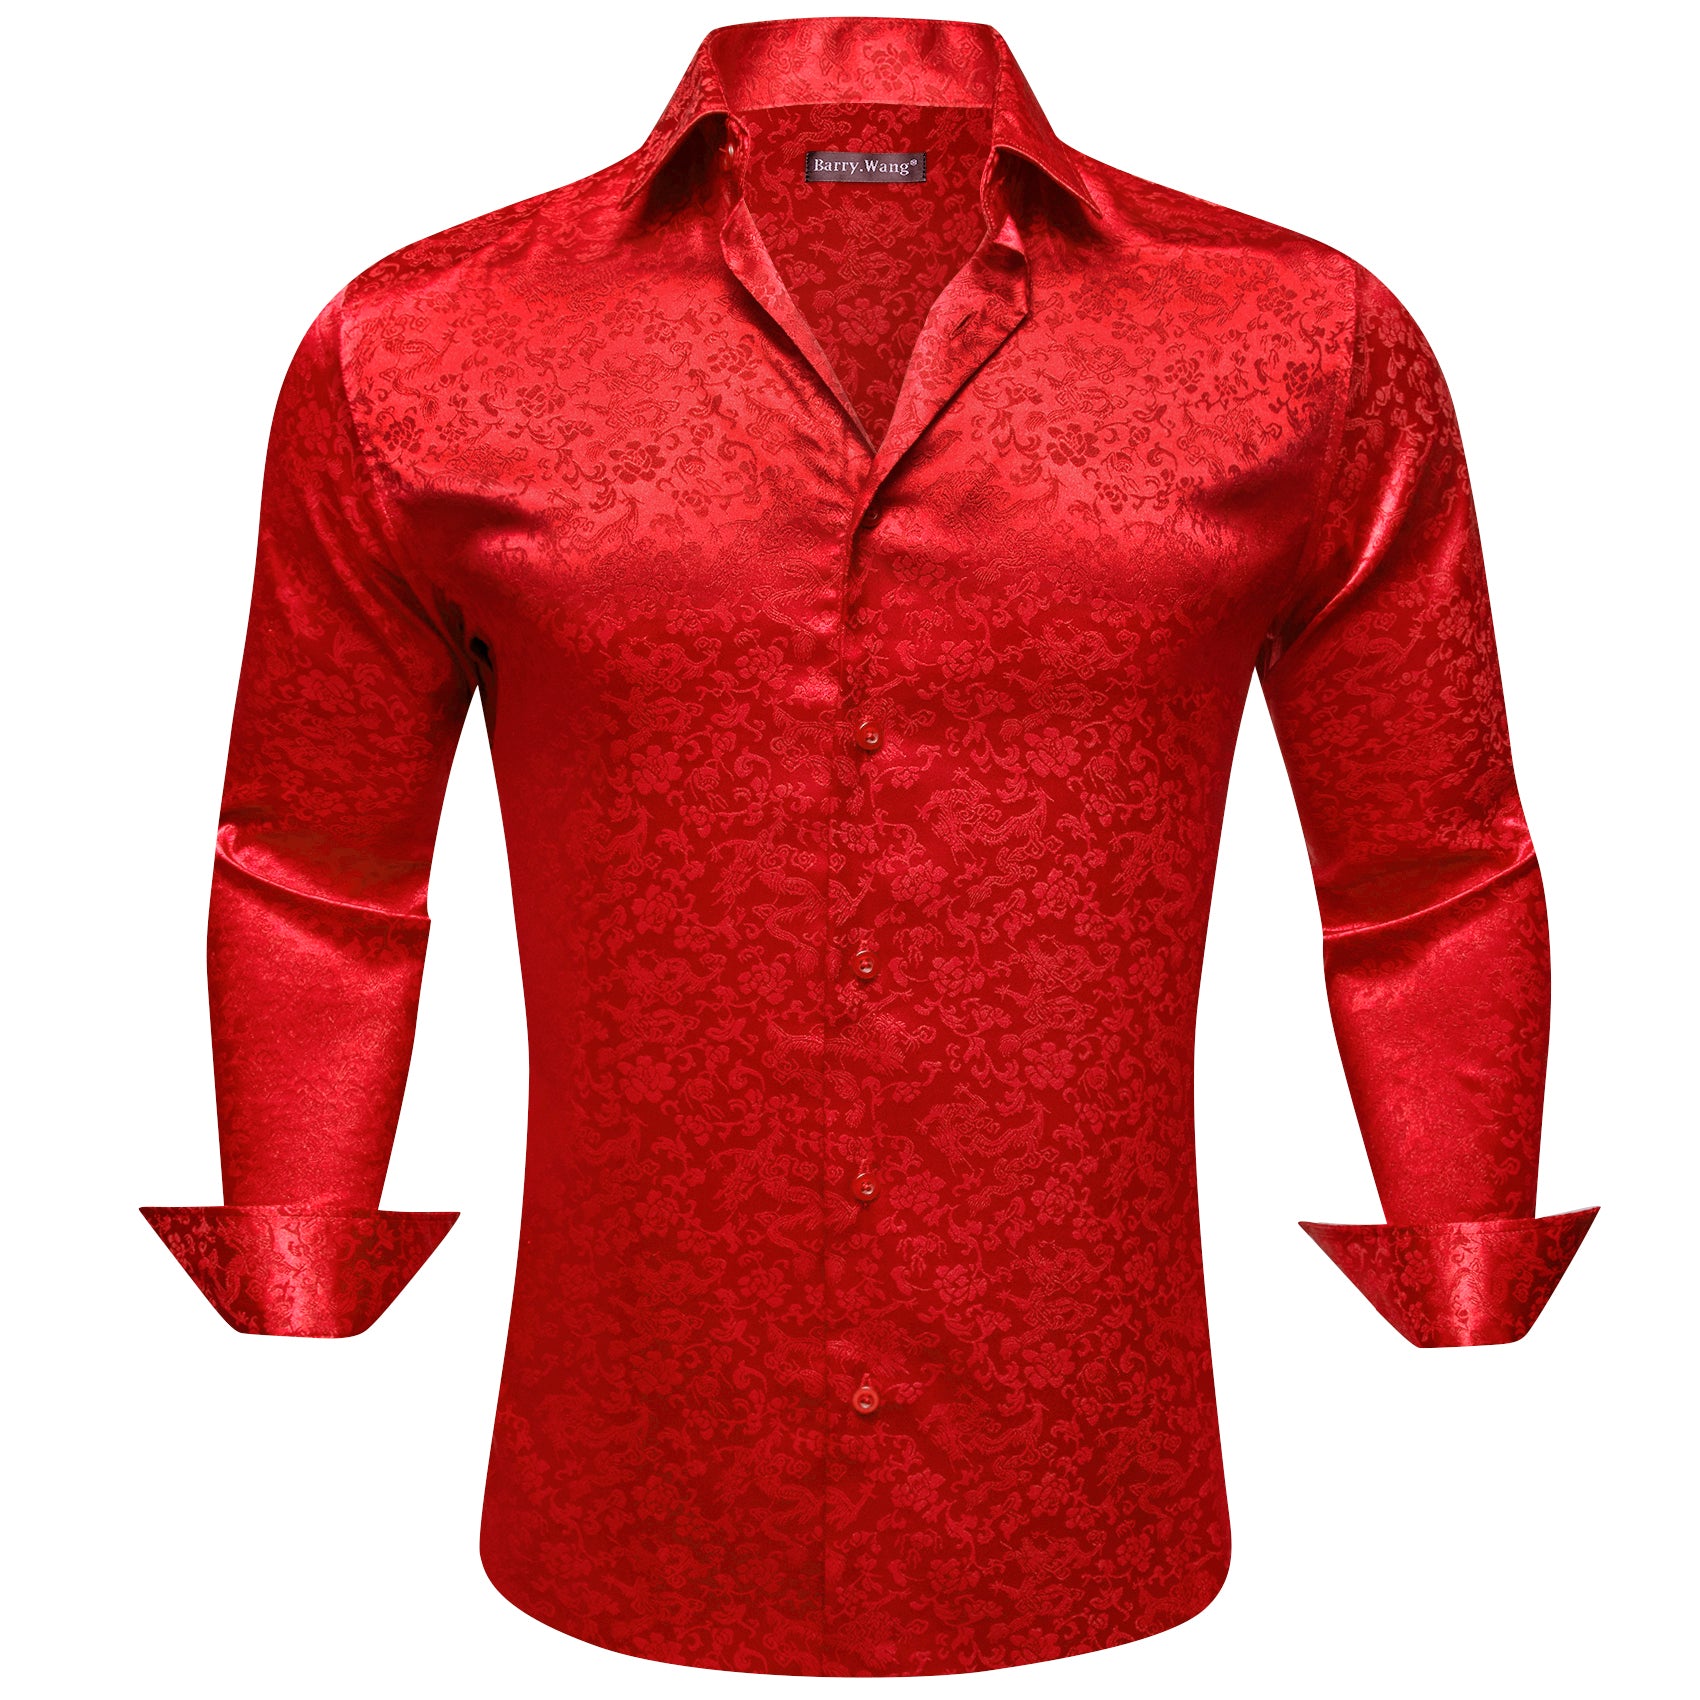 Barry.wang Strong Red Floral Silk Men's Shirt